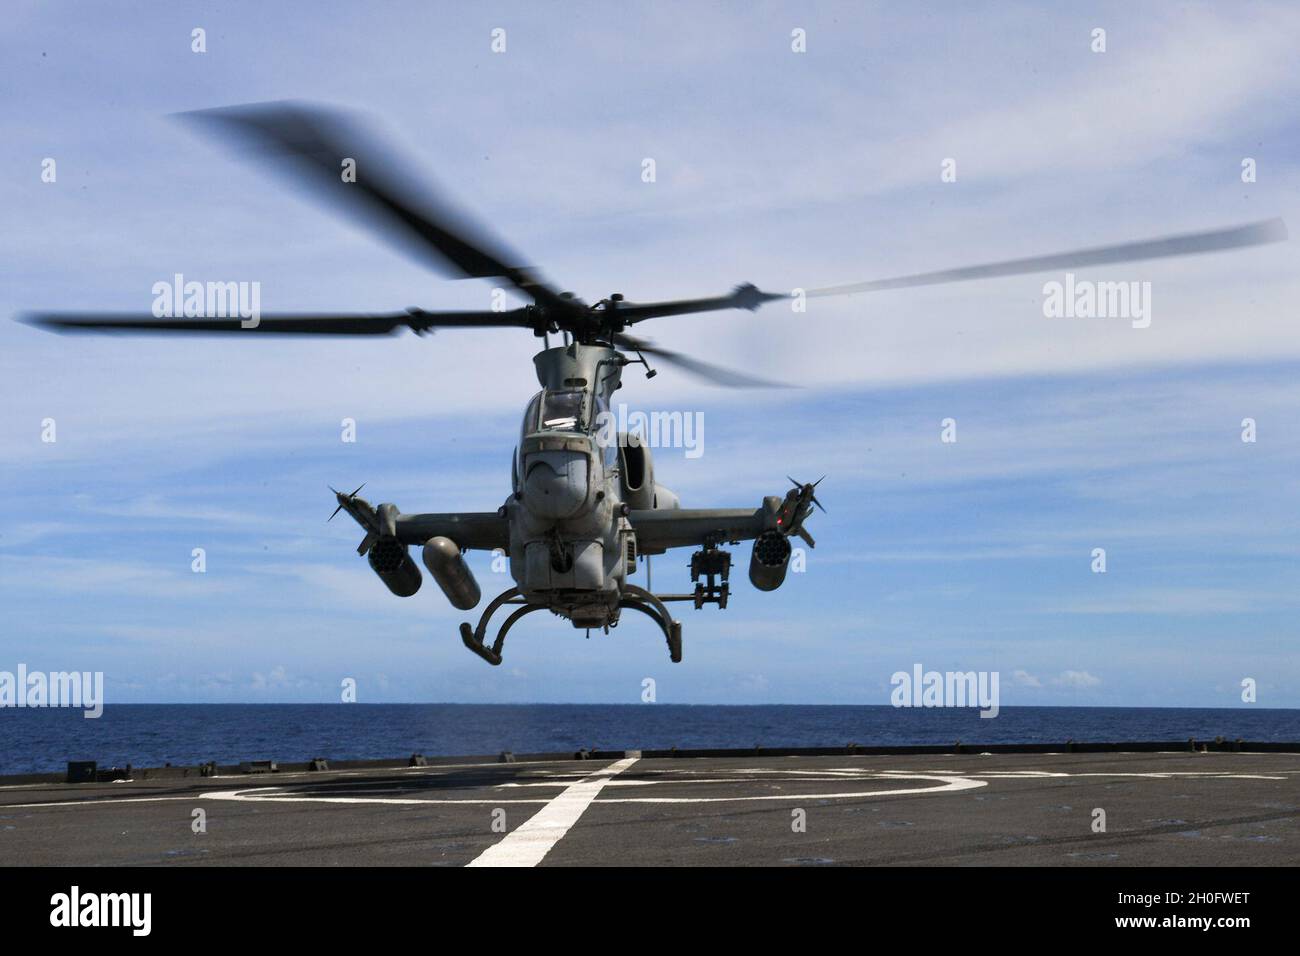 210227-N-UM706-1037 MER DES PHILIPPINES (FÉV27, 2021) Un hélicoptère Bell AH-1W Super Cobra affecté à l'escadron marin de Tiltrotor (VMM) 262 débarque à bord du quai amphibie USS Ashland (LSD 48).Ashland, qui fait partie du America Amphiobie Ready Group, ainsi que de la 31e Marine Expeditionary Unit, opère dans la zone de responsabilité de la 7e flotte des États-Unis pour améliorer l'interopérabilité avec les alliés et les partenaires, servant de force de réponse prête à l'emploi pour défendre la paix et la stabilité dans la région Indo-Pacifique. Banque D'Images